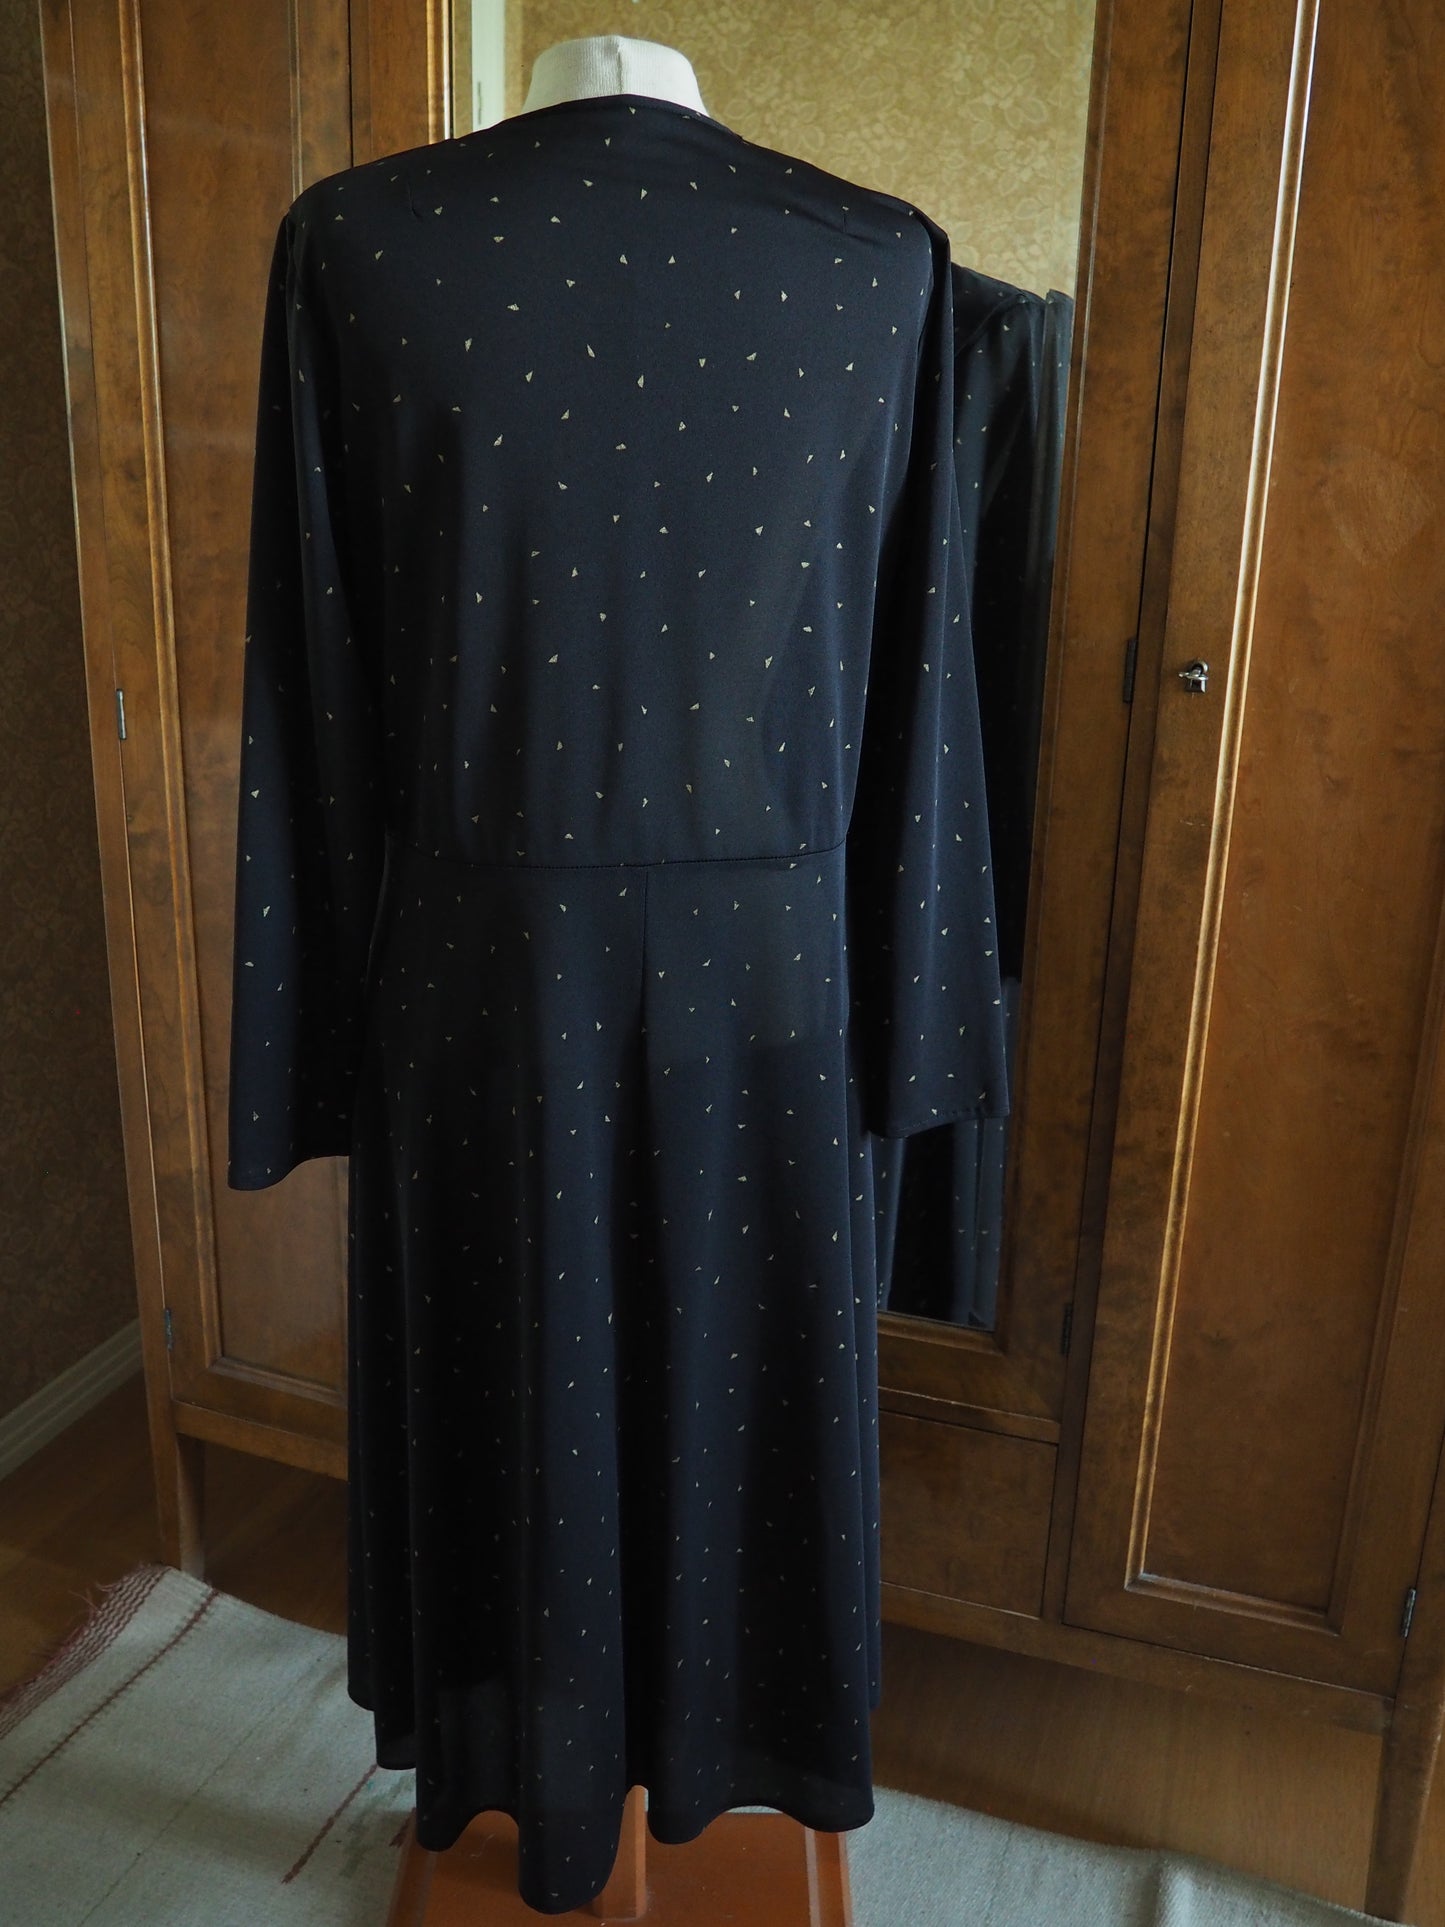 Pilkullinen Carolin Muoti-Hovin mekko, käyttämätöntä vanhaa varastoa